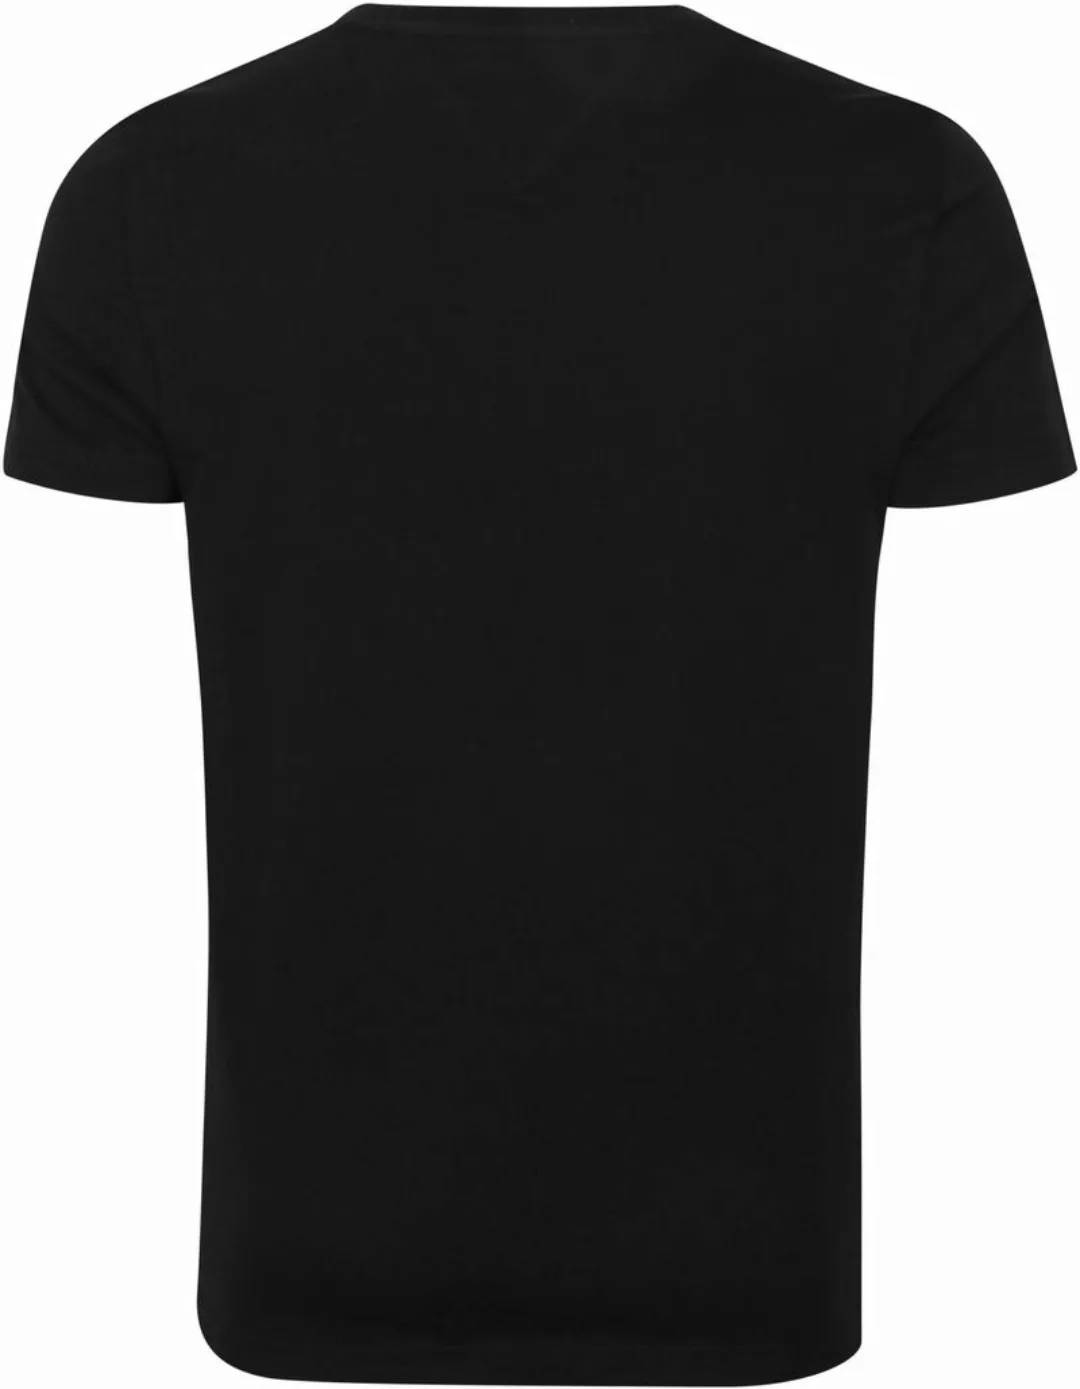 Tommy Hilfiger Logo T-shirt Schwarz - Größe XS günstig online kaufen